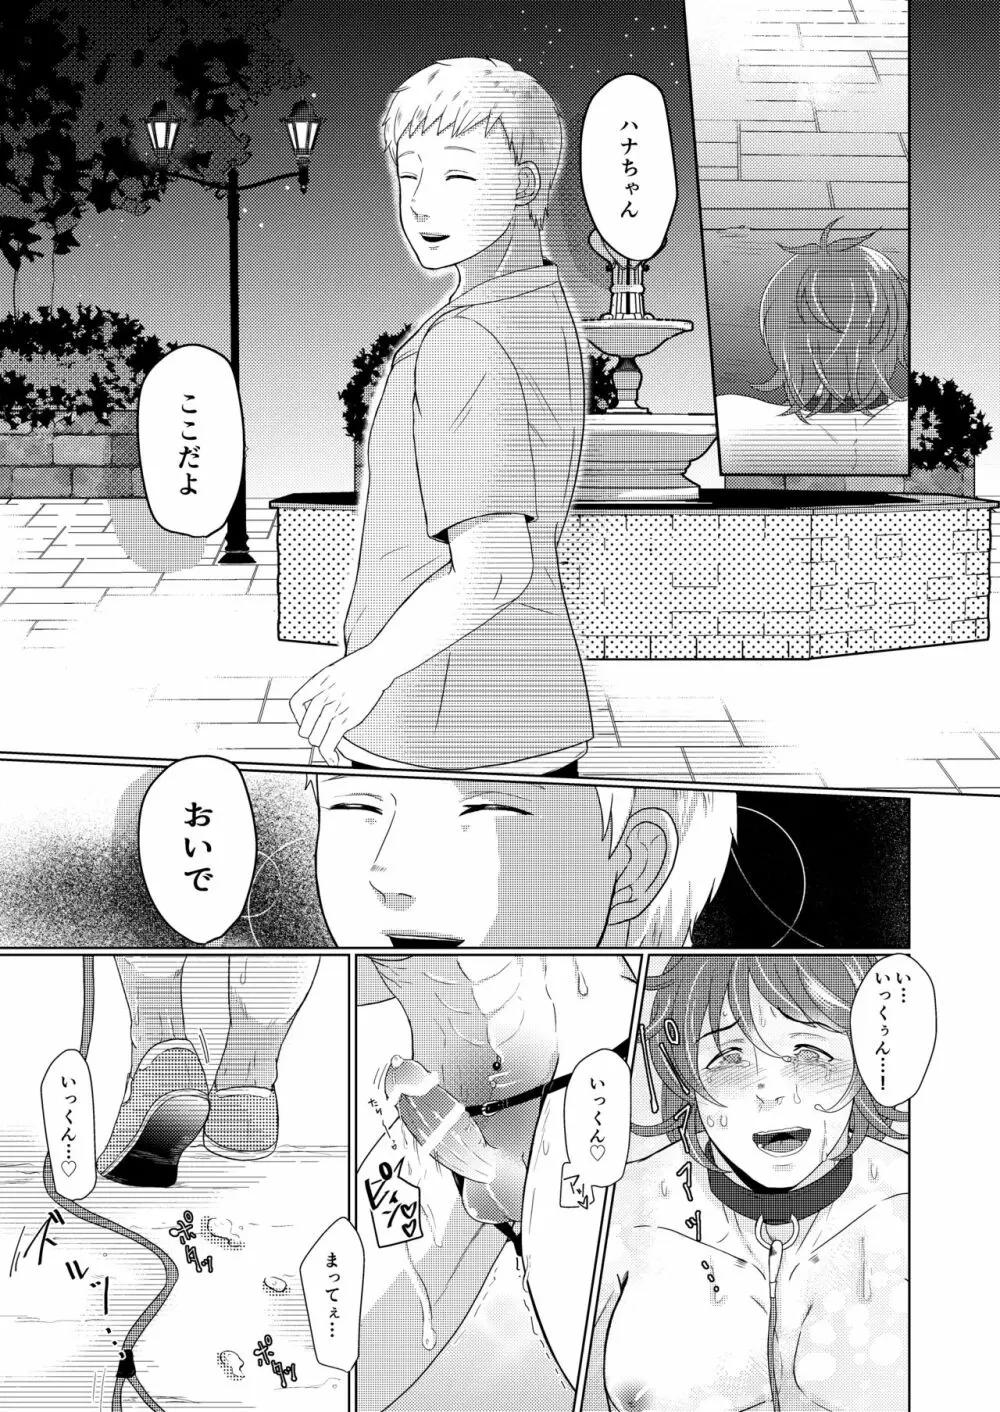 SM調教漫画③夜のお散歩編 8ページ